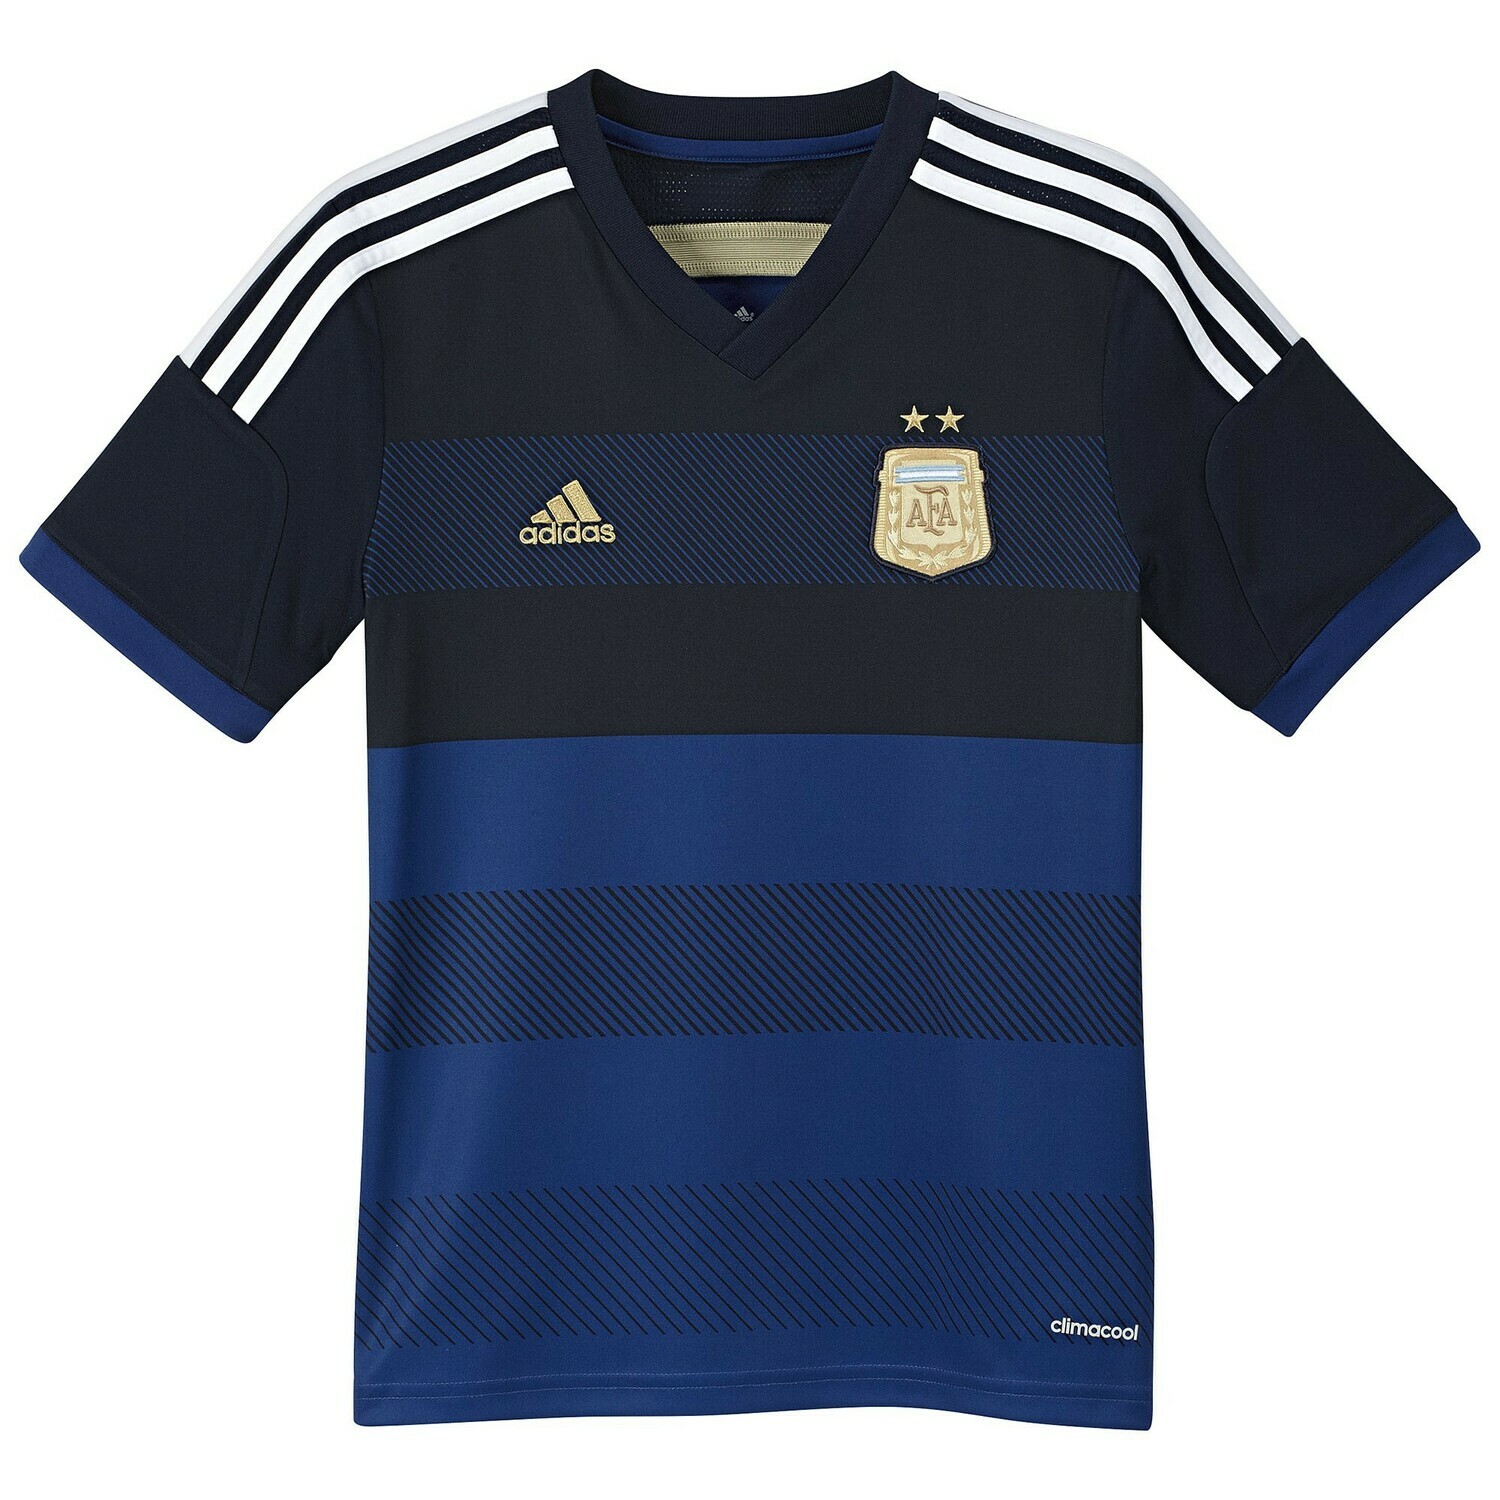 argentina away jersey 2014